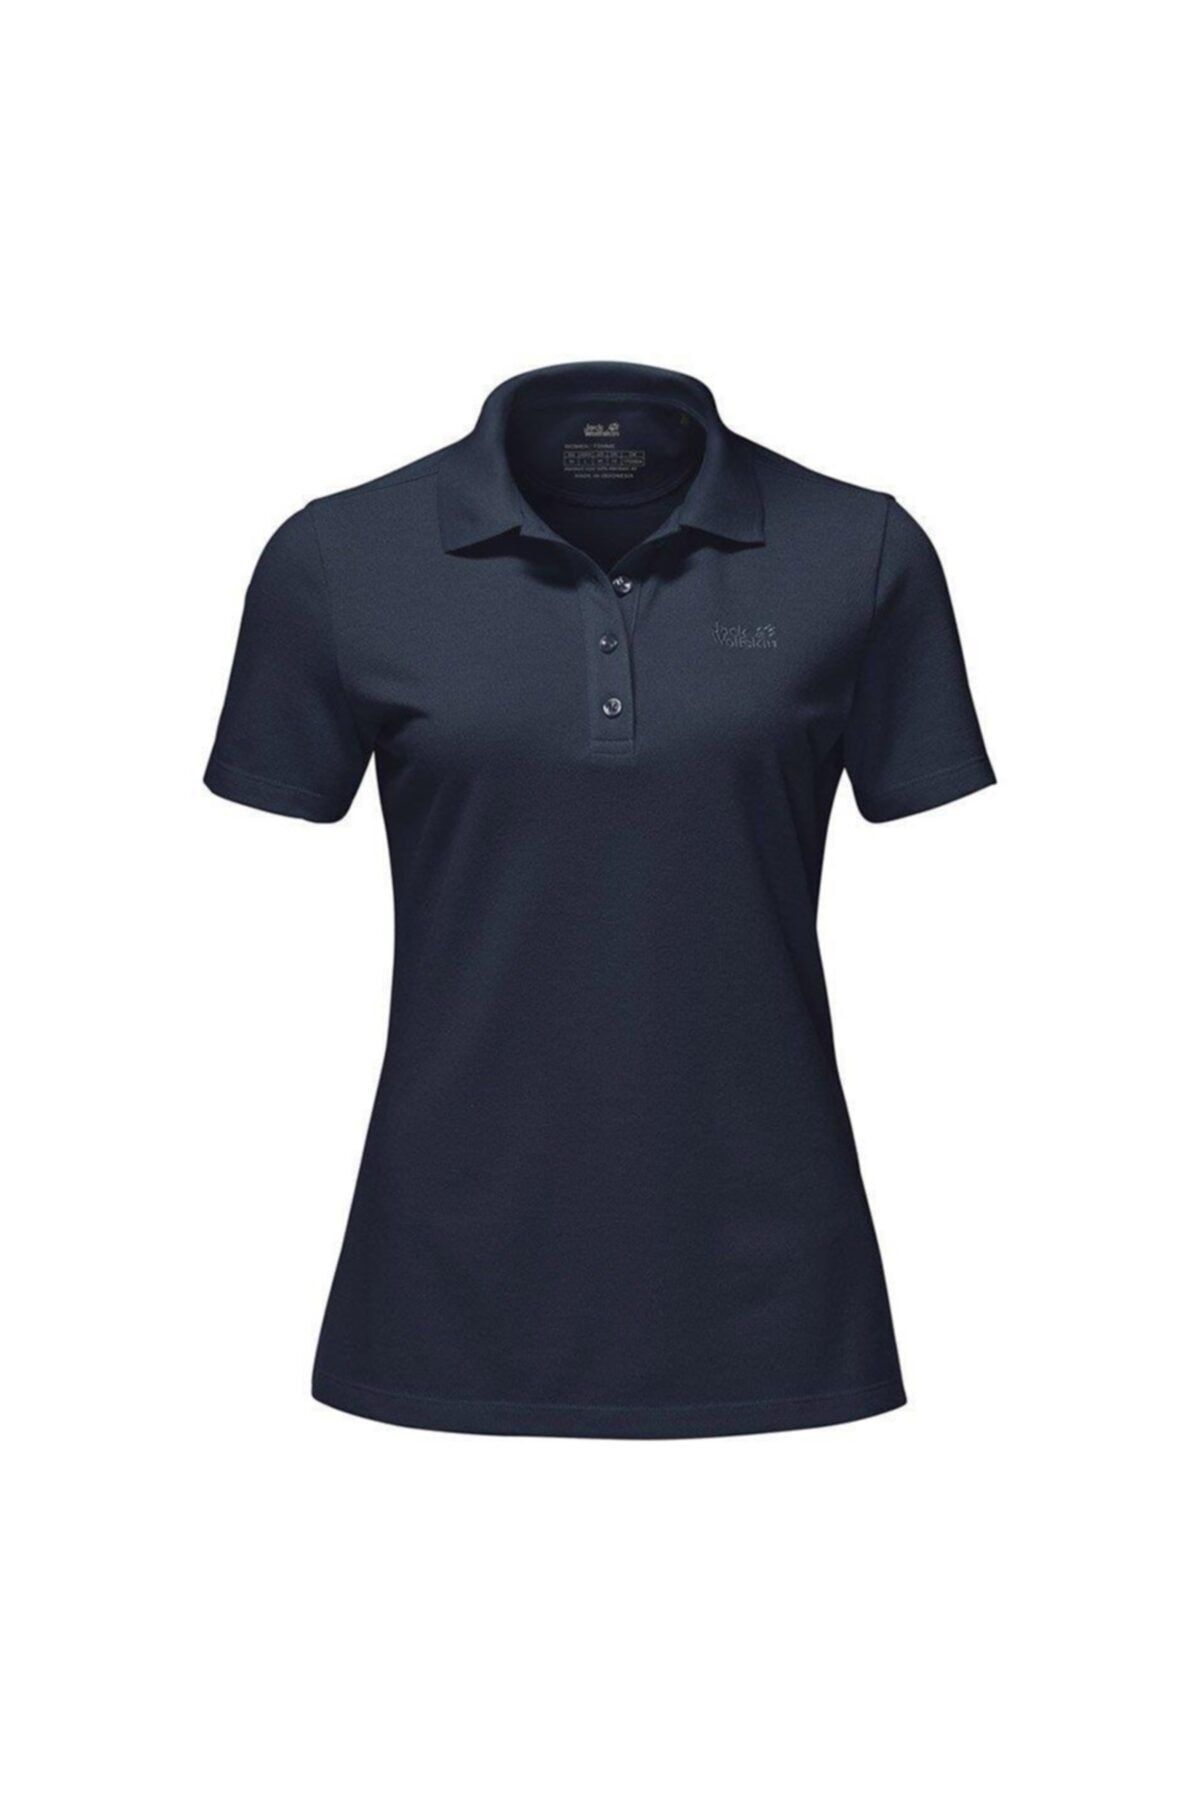 Jack Wolfskin Pique Polo Kadın T-Shirt - 1805701-1010